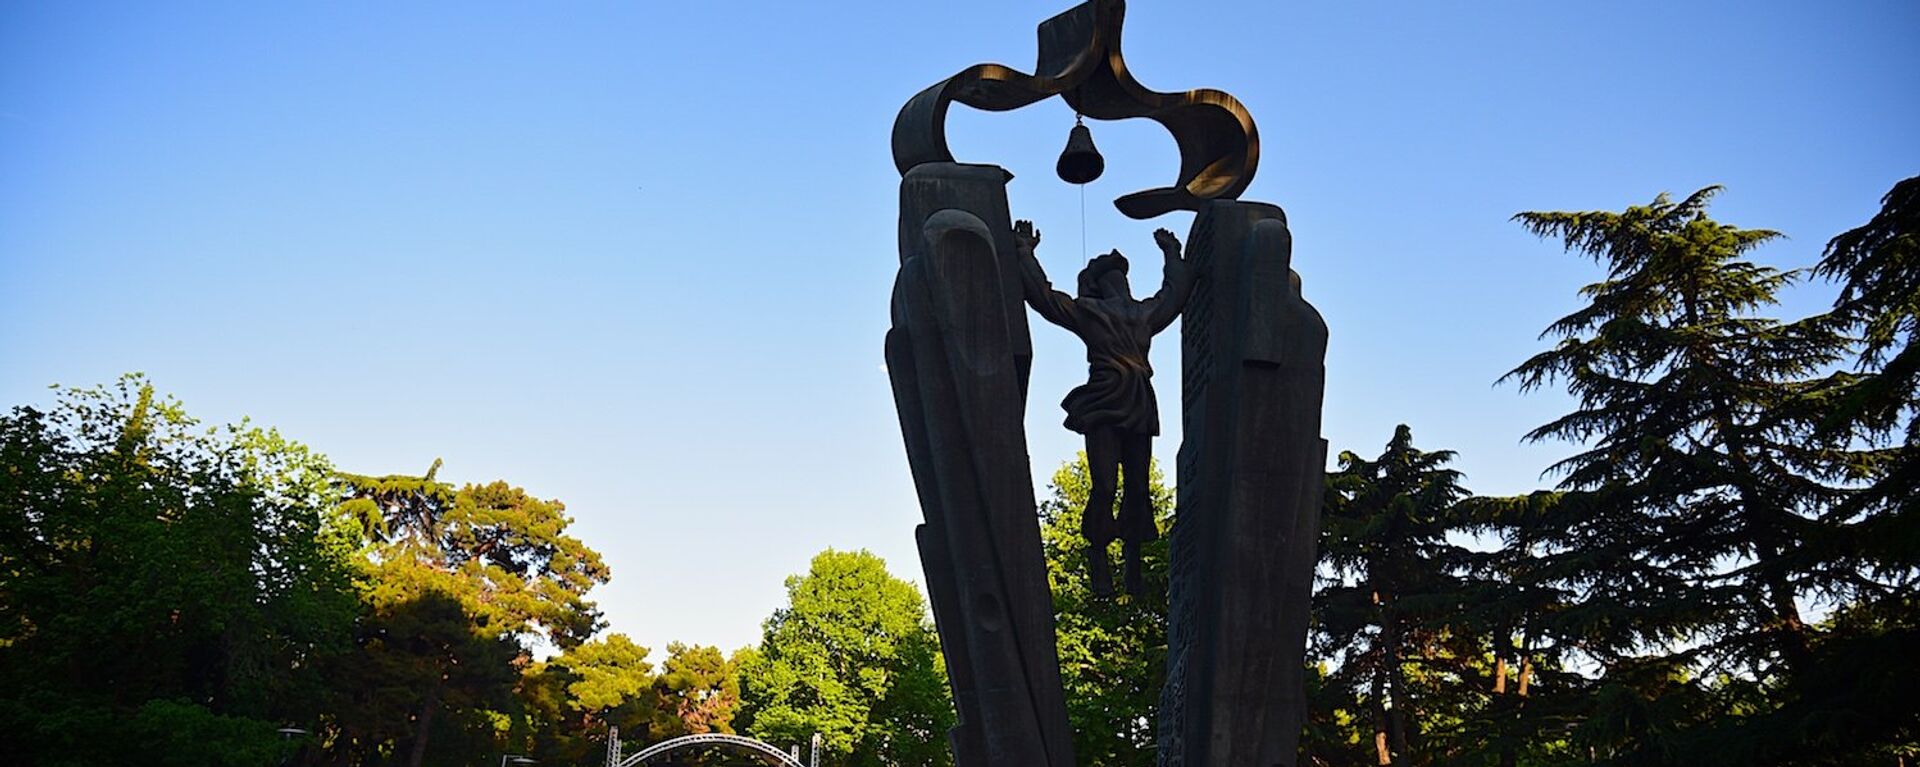 Памятник Деда Эна в парке на набережной Тбилиси - Sputnik Грузия, 1920, 21.02.2020